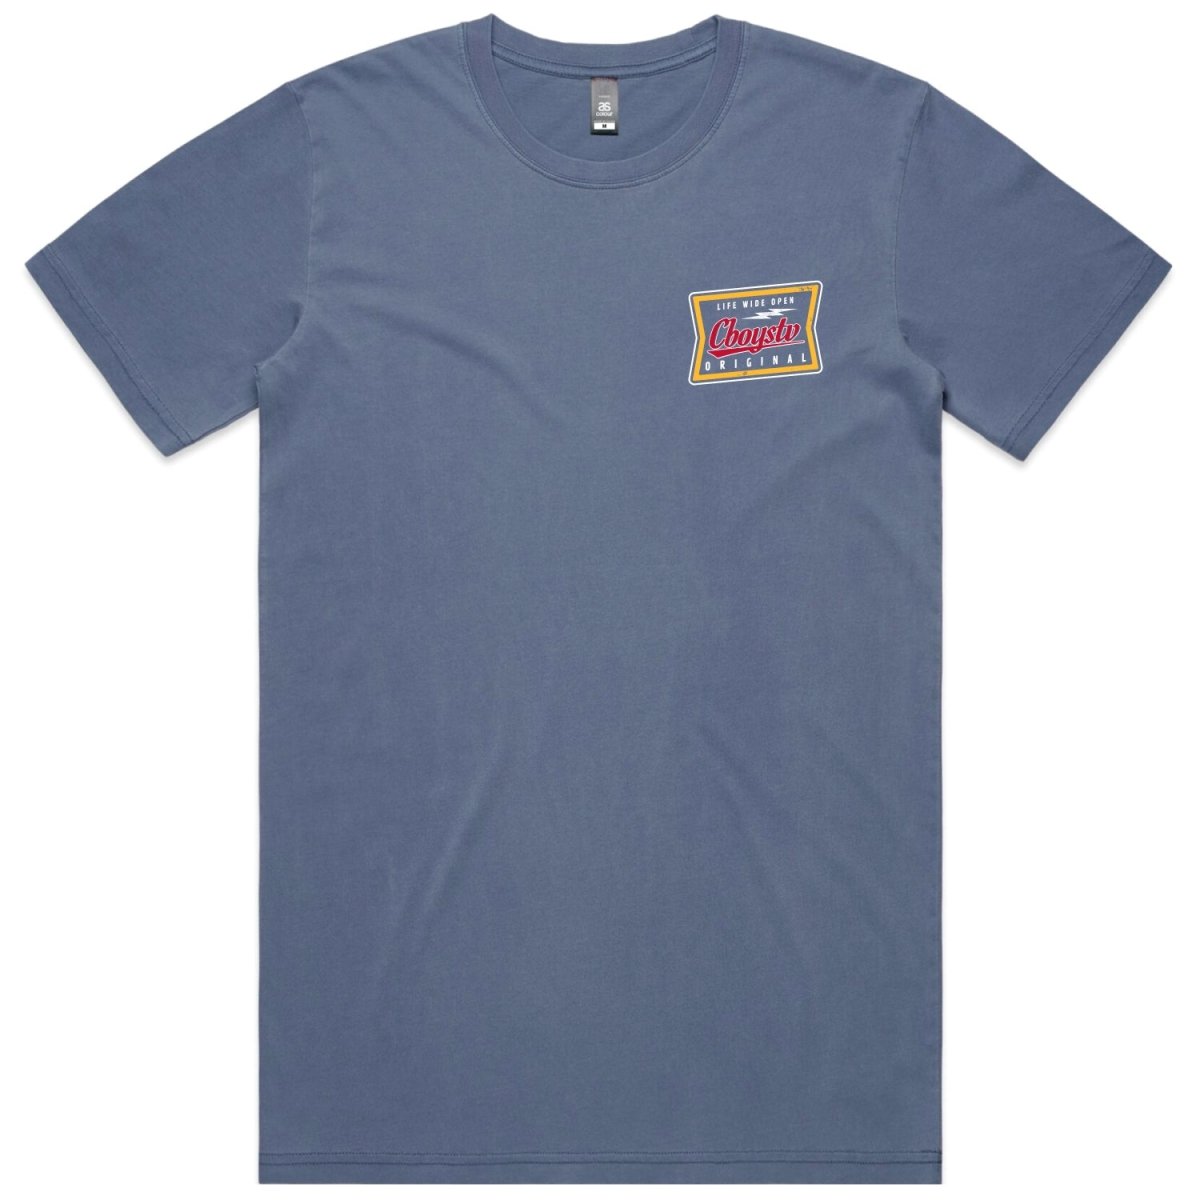 The Miller Vintage Blue T-shirt